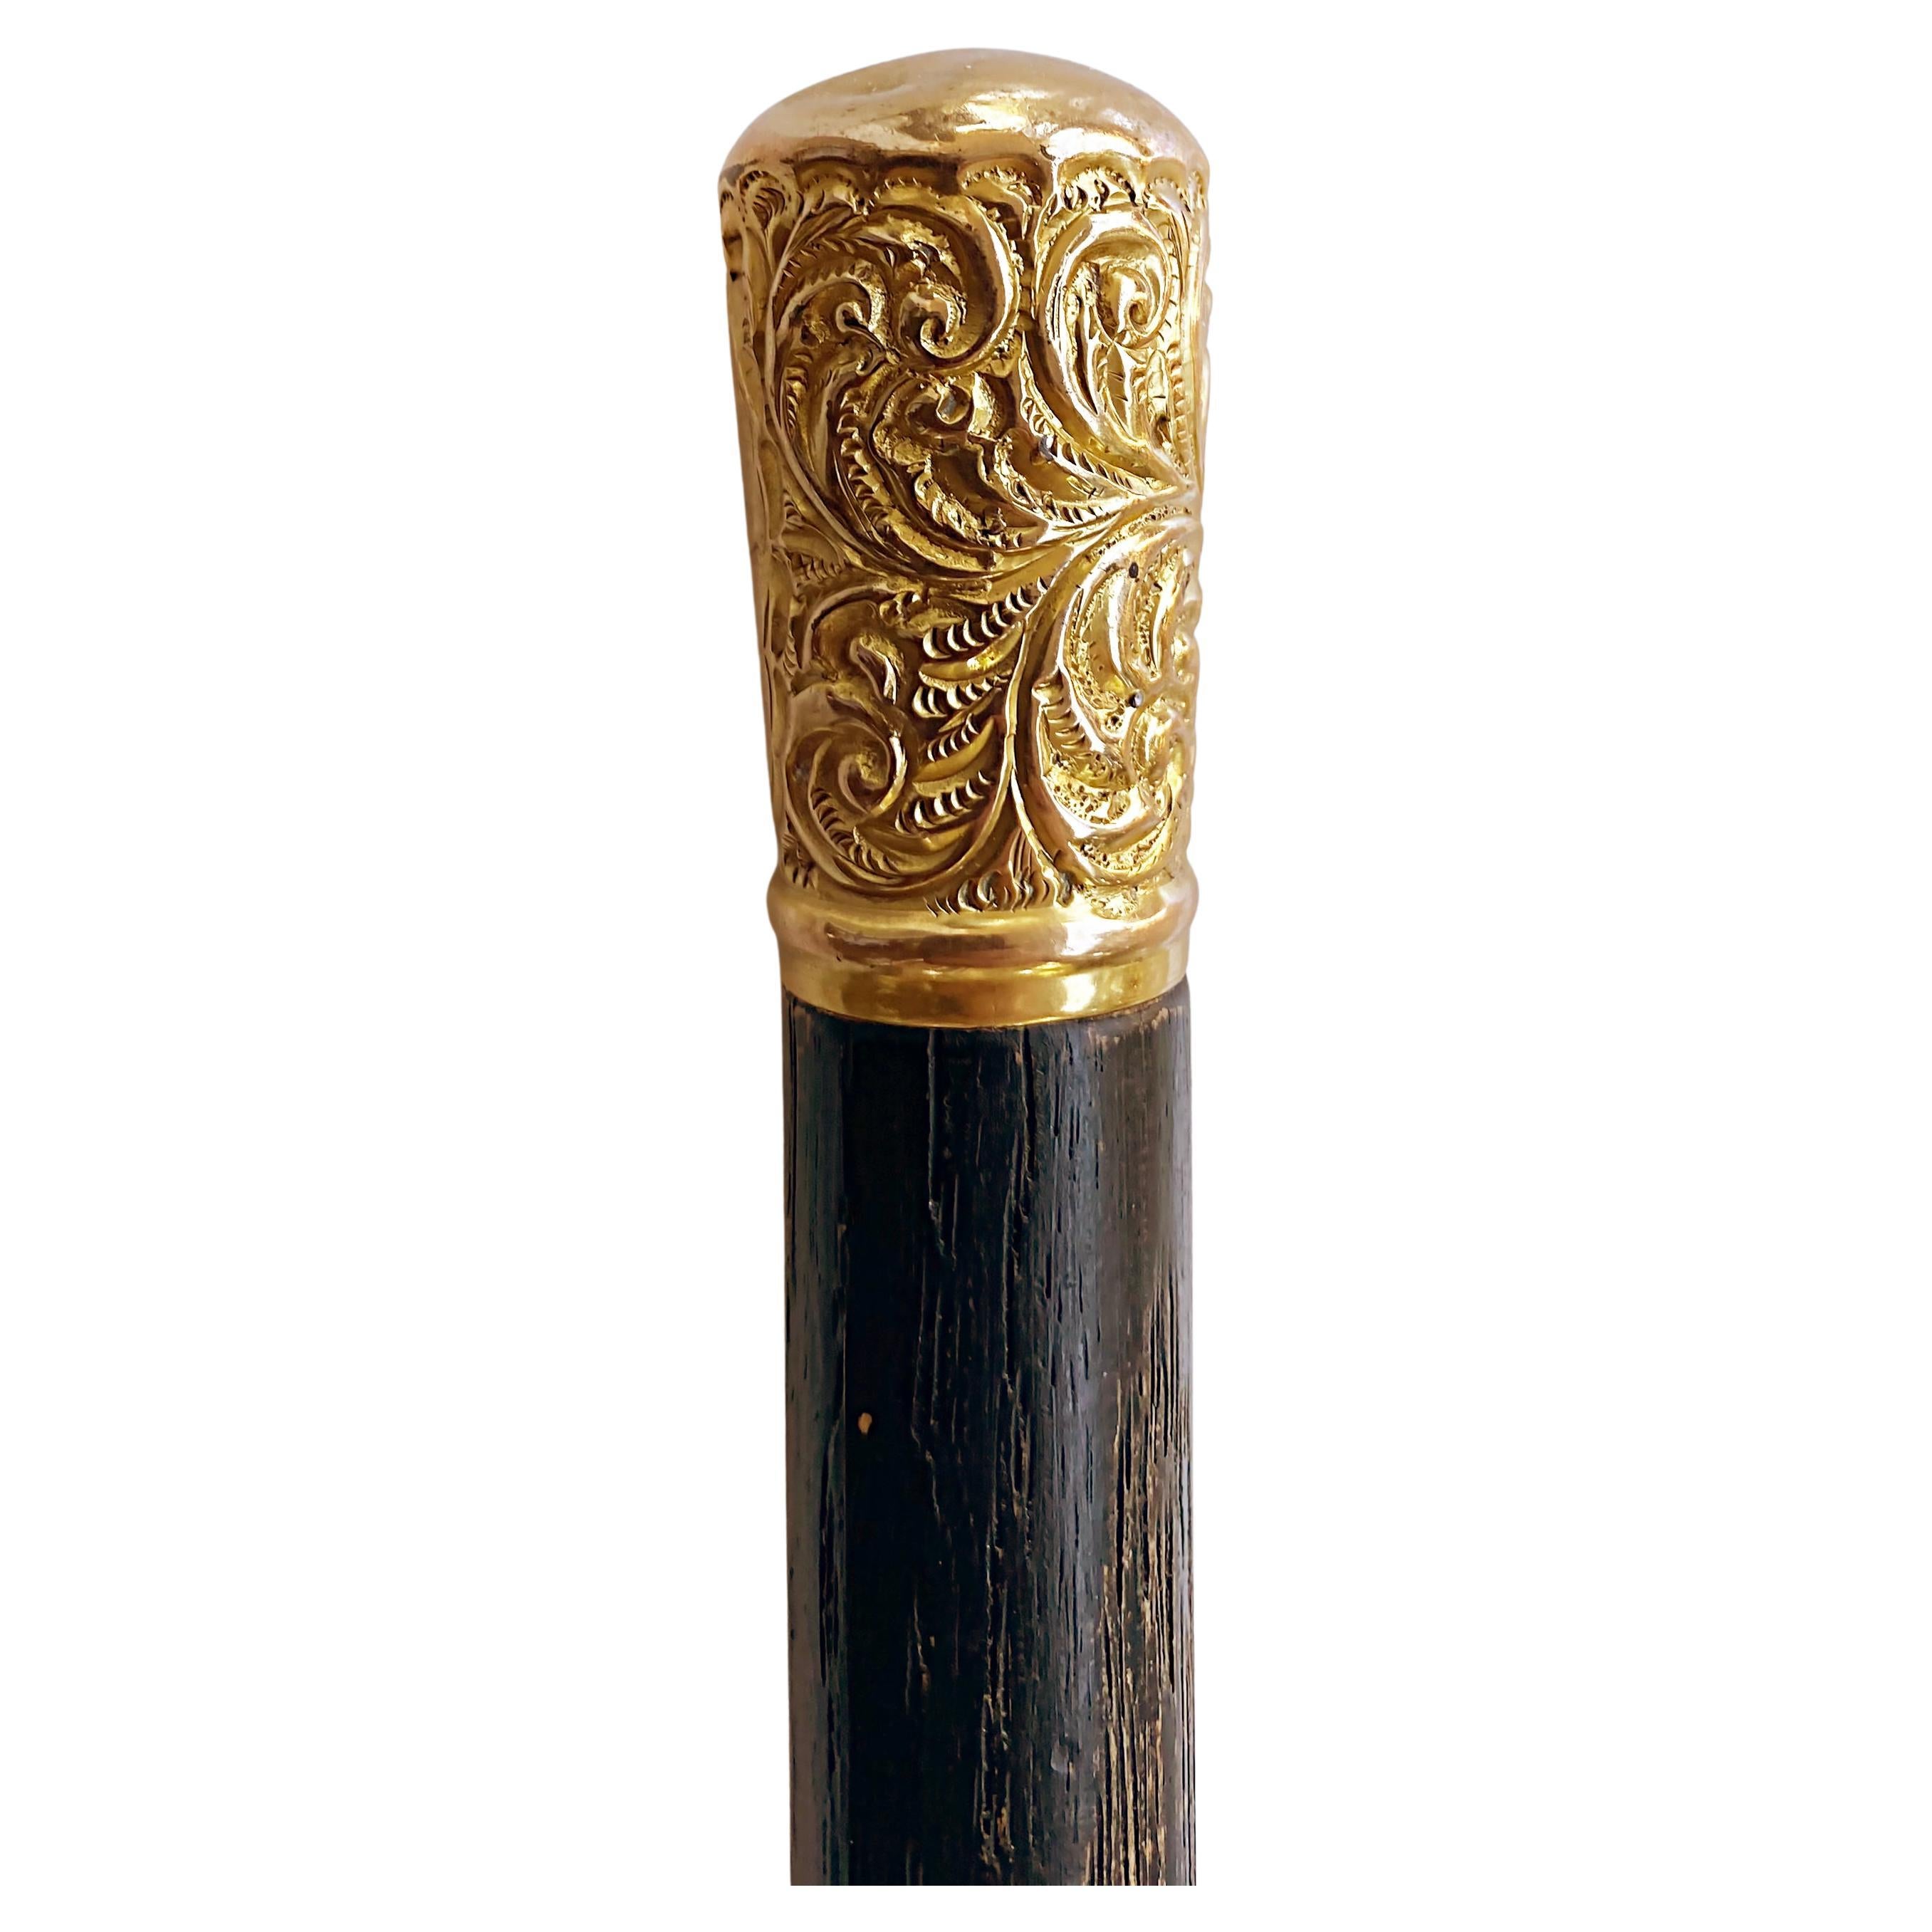 Antique bâton de marche danois à poignée en or 1901, date monogrammée	